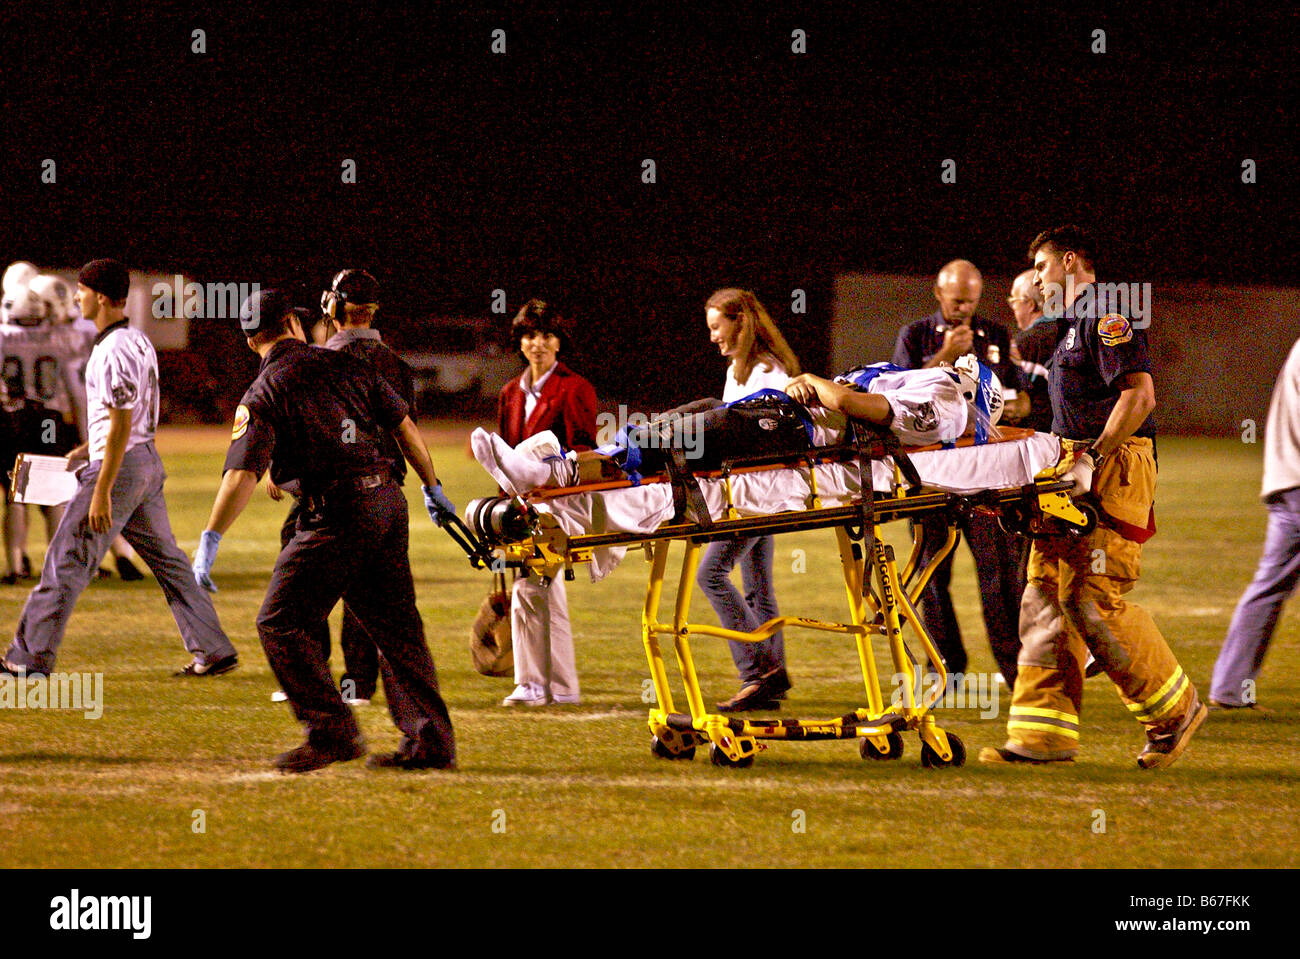 Jugador de fútbol americano a nivel high school lesionado es rodó desde el campo por paramédicos durante un juego nocturno en el sur de California Foto de stock